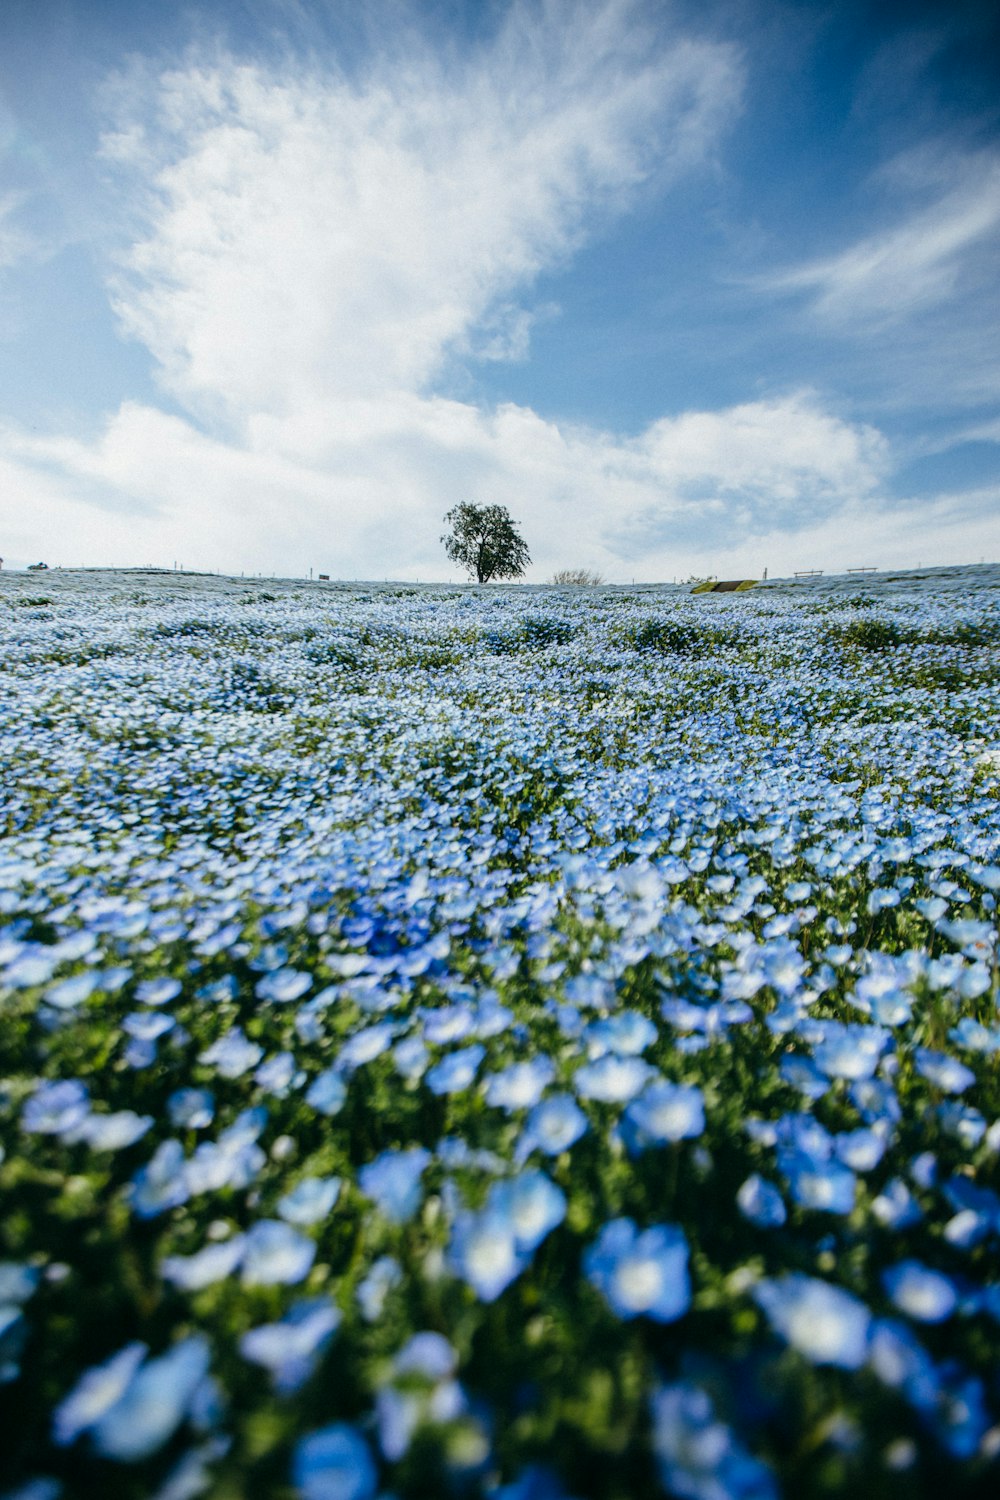 blue flower field under white clouds during daytime